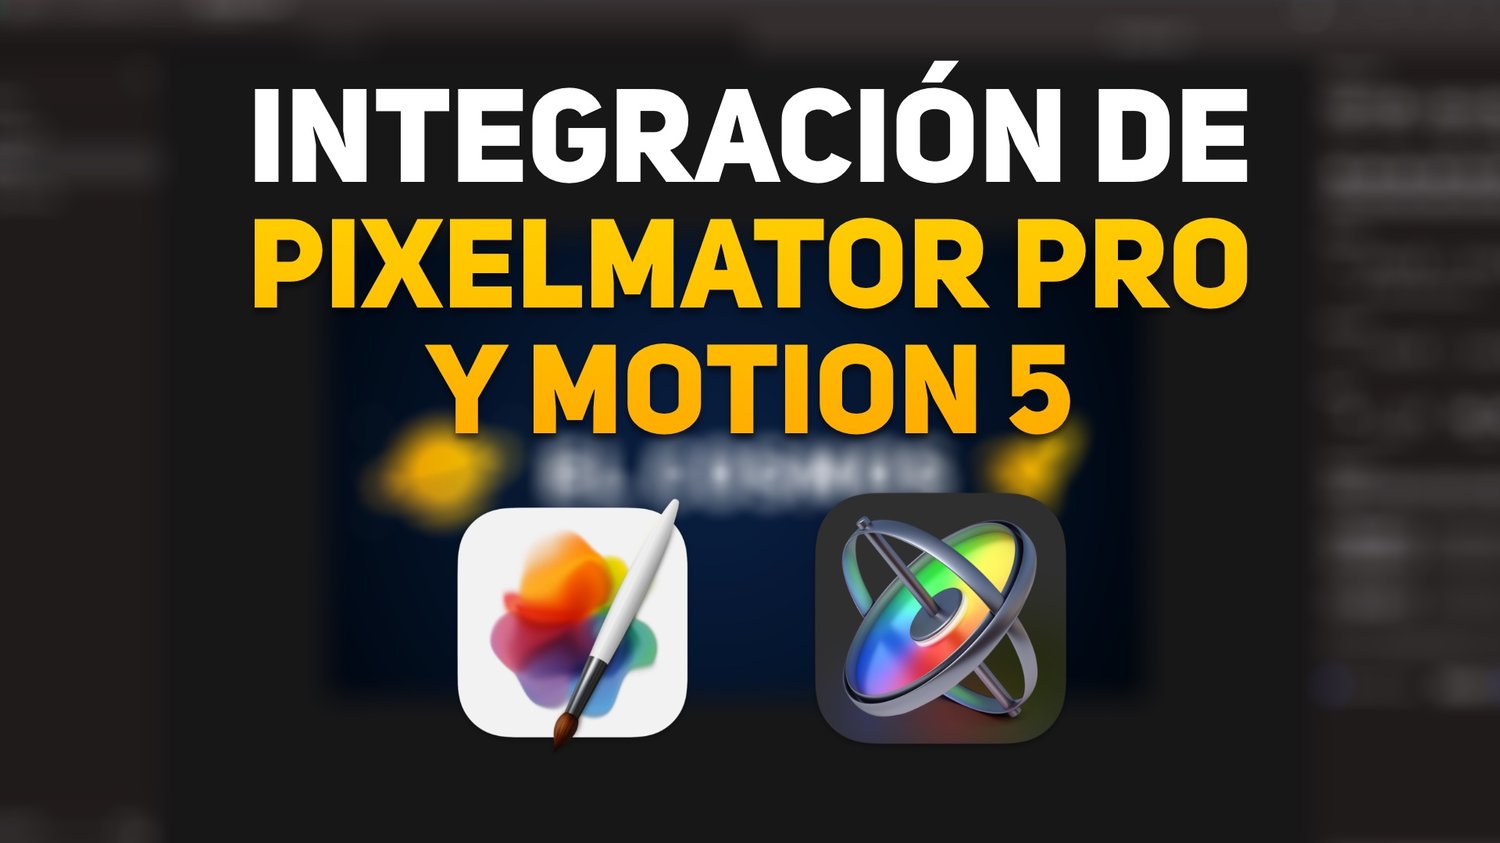 Tutorial Pixelmator + Motion 5 → Una integración extremadamente útil!